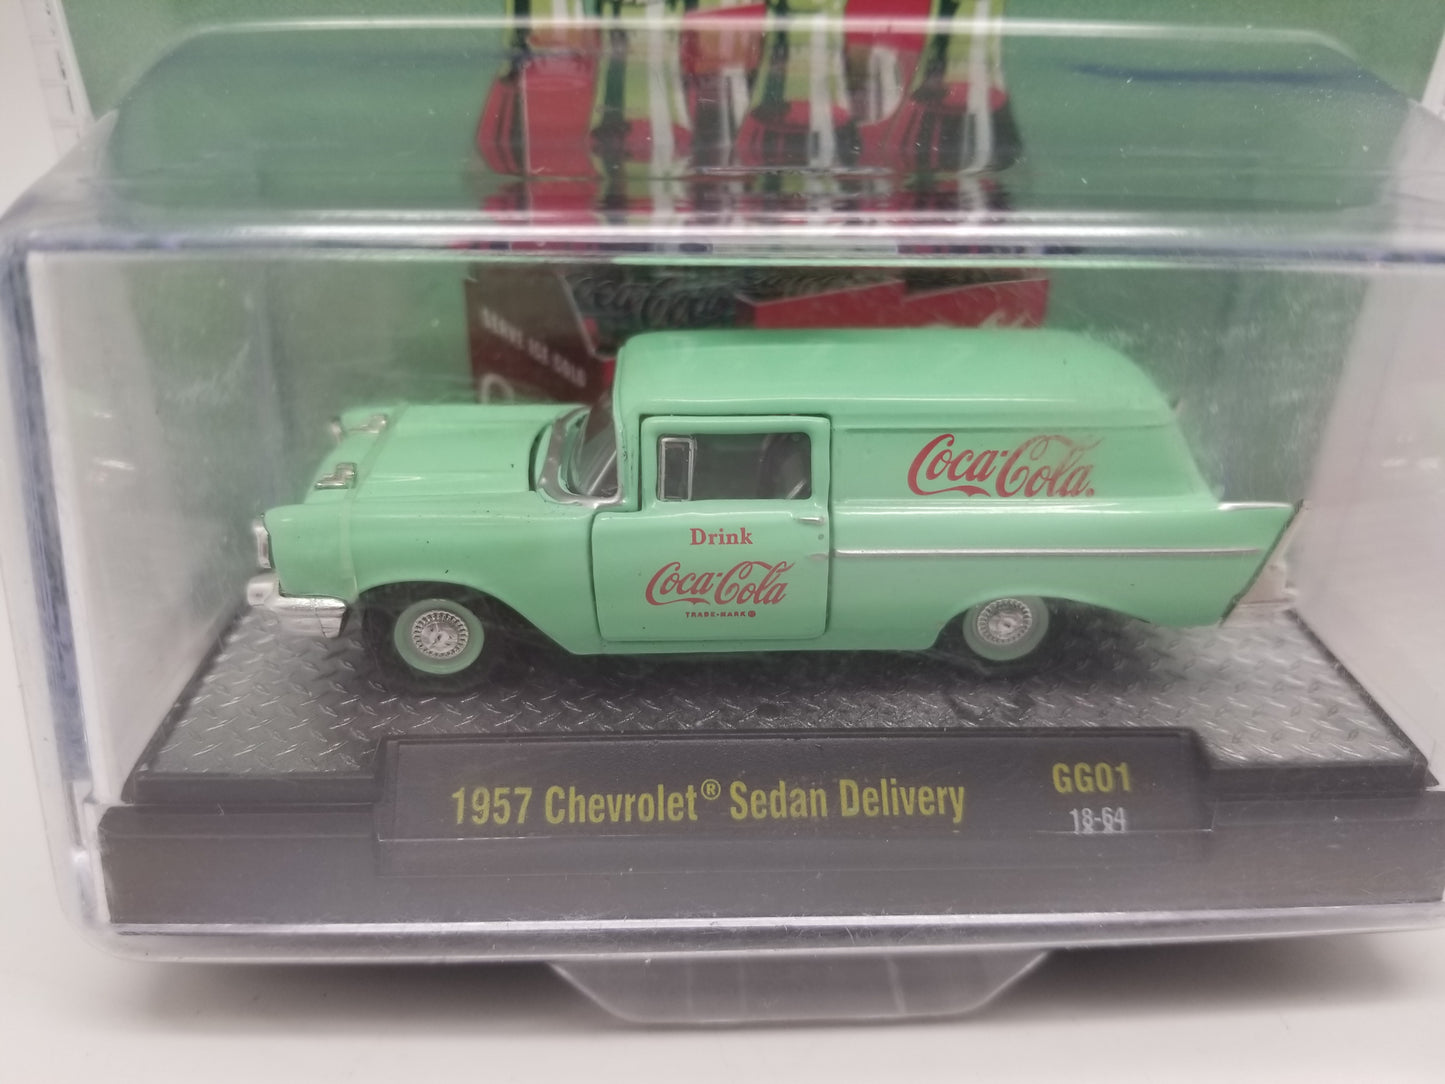 M2 1957 Chevrolet Sedan Delivery - Coca-Cola